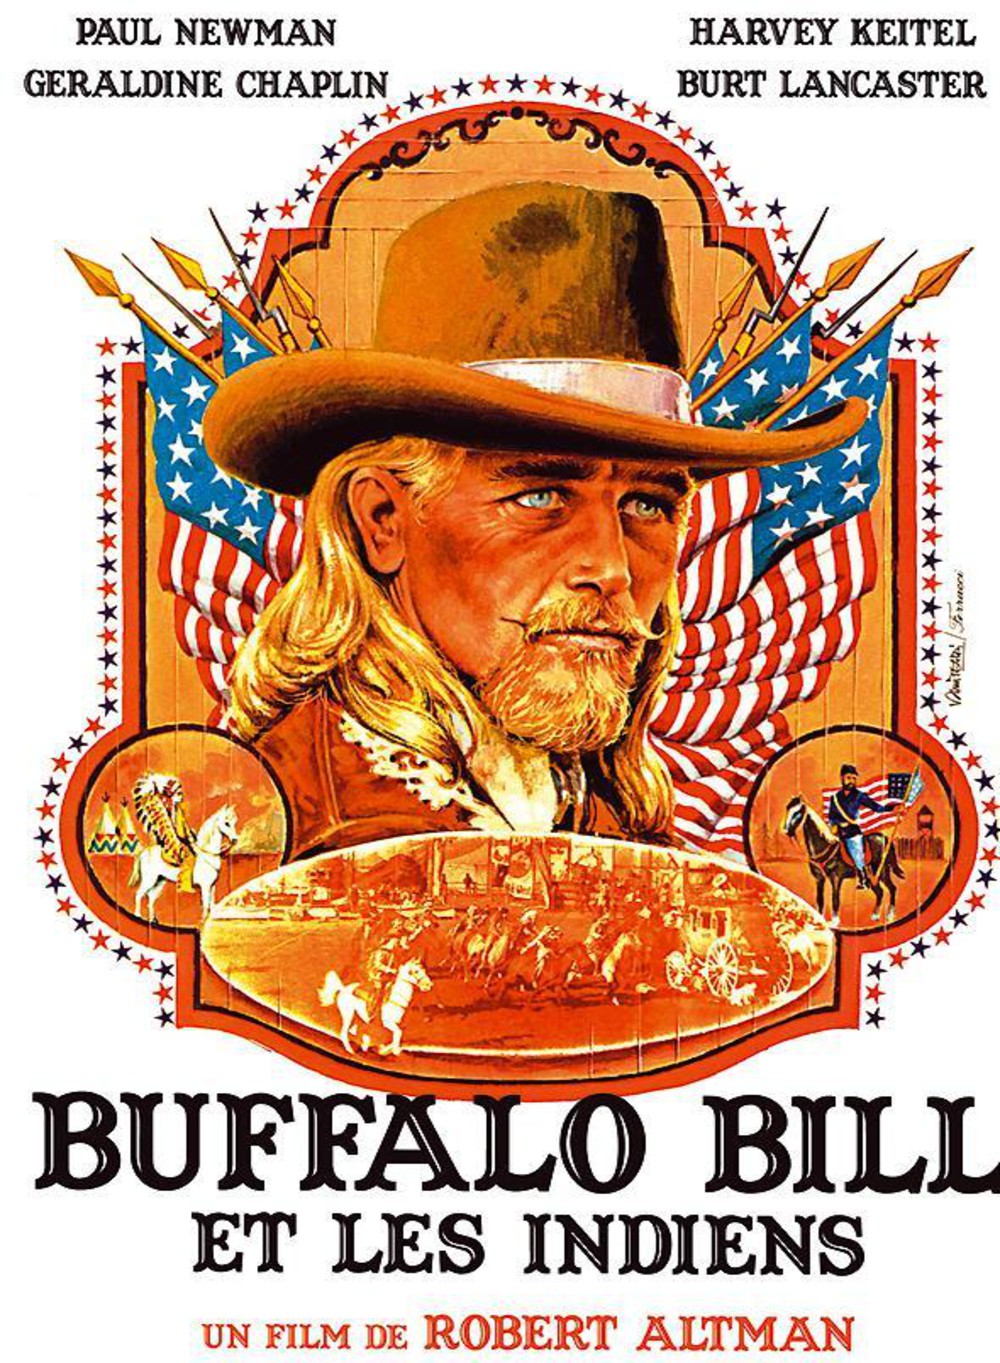 Buffalo bill joe dirt